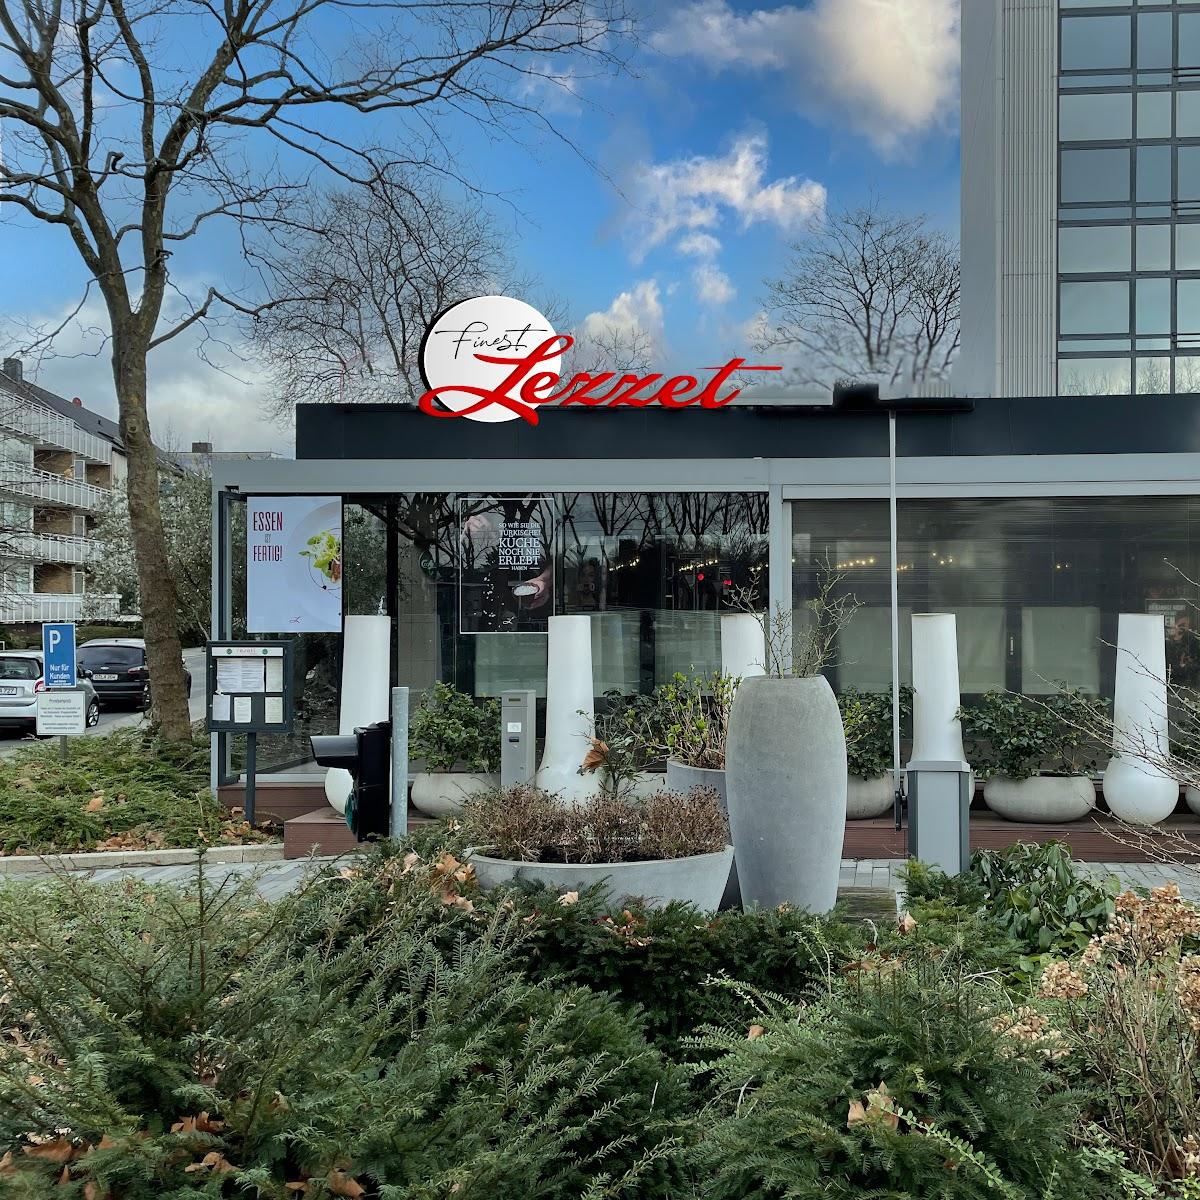 Restaurant "FINEST LEZZET RESTAURANT" in Düsseldorf